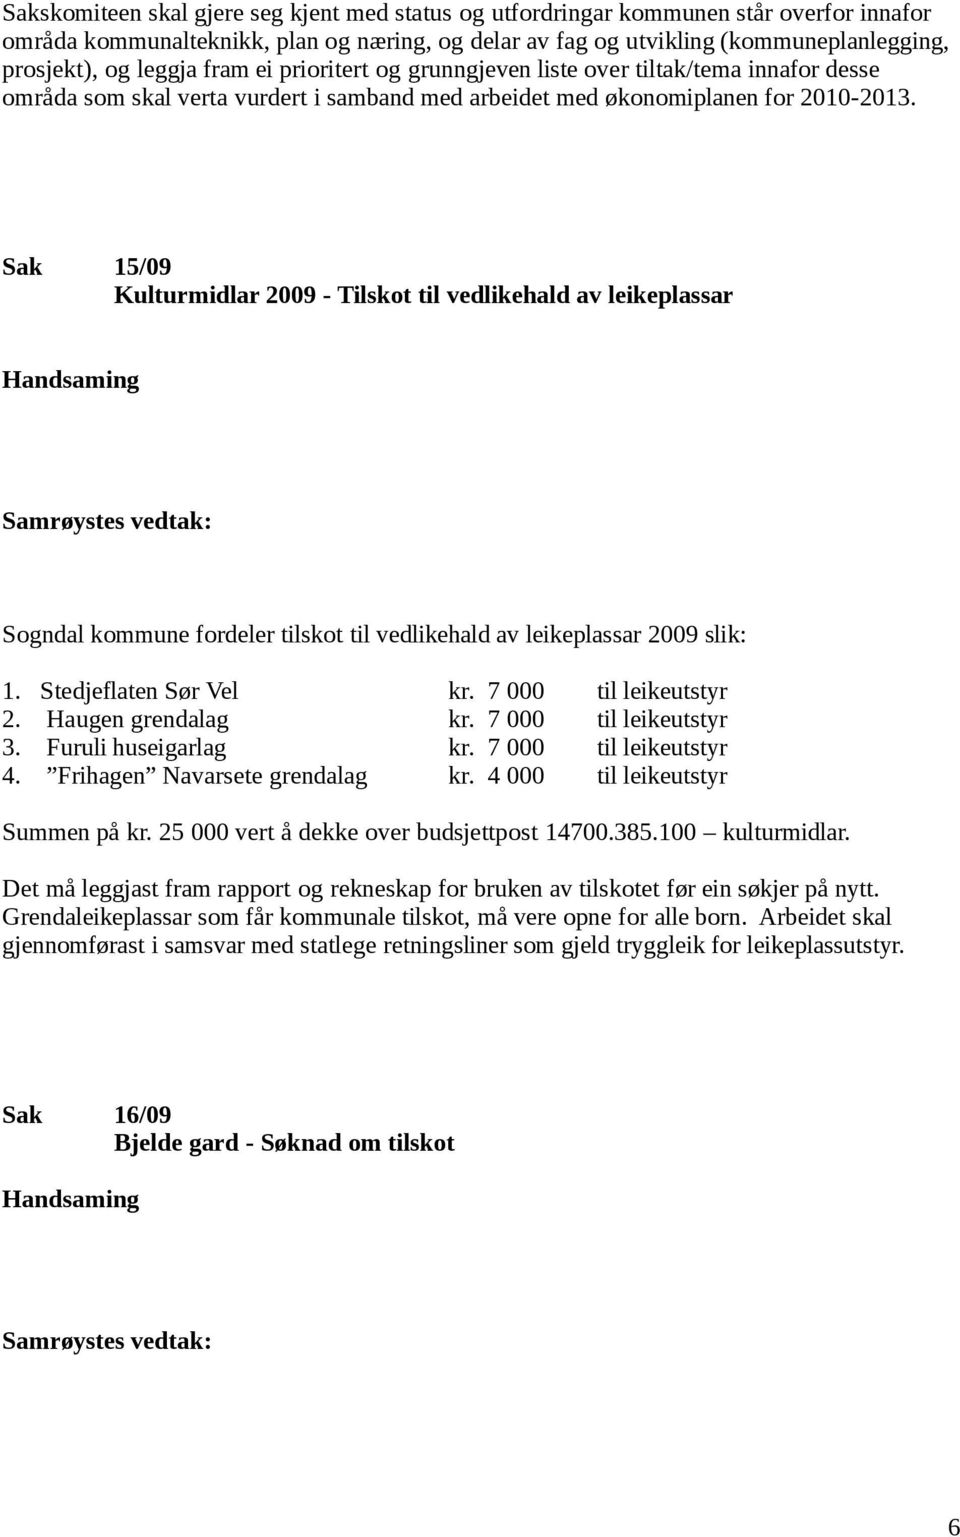 Sak 15/09 Kulturmidlar 2009 - Tilskot til vedlikehald av leikeplassar Sogndal kommune fordeler tilskot til vedlikehald av leikeplassar 2009 slik: 1. Stedjeflaten Sør Vel kr. 7 000 til leikeutstyr 2.